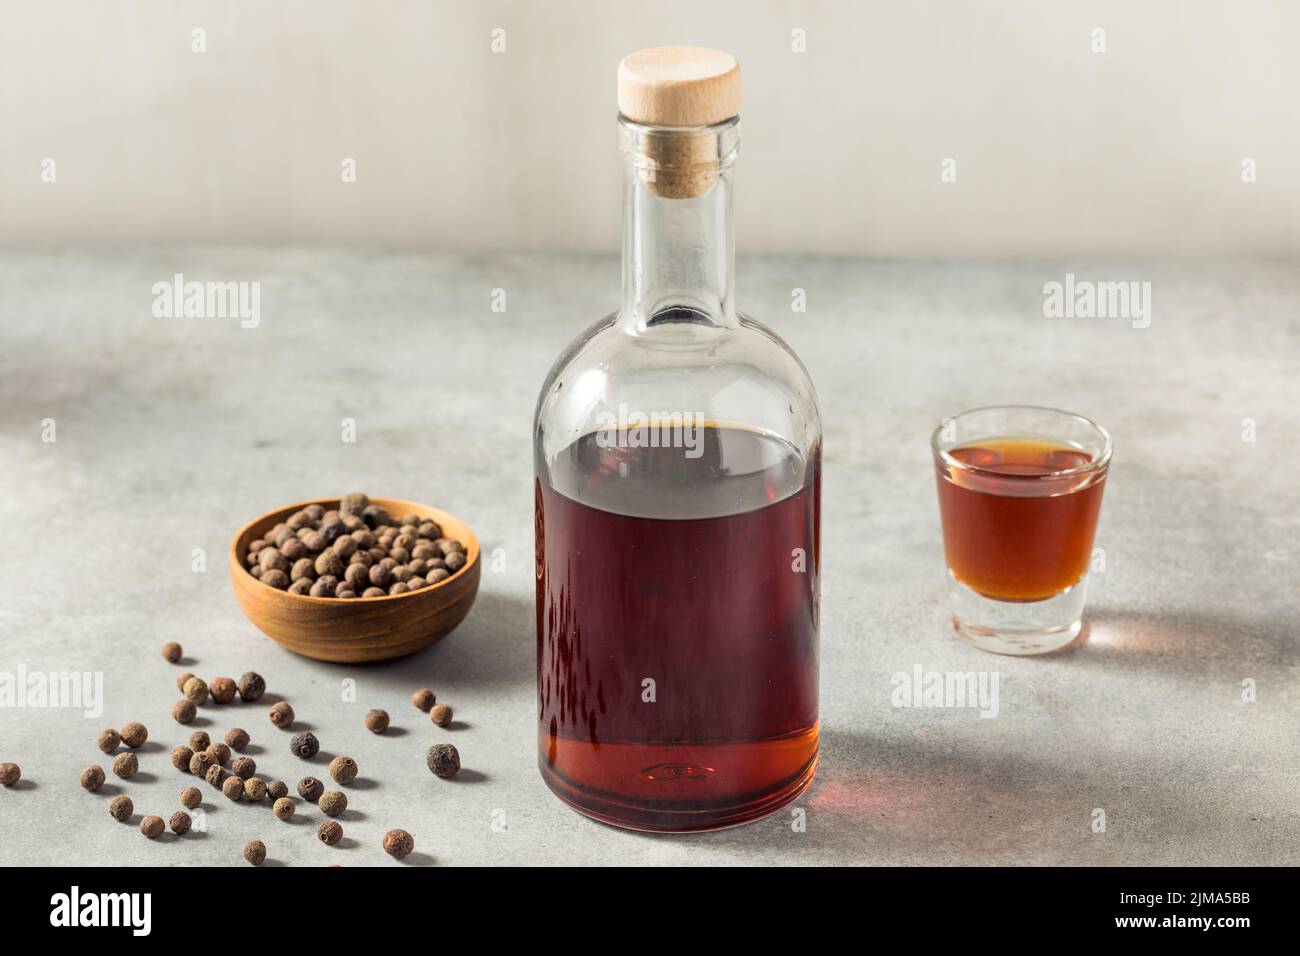 Boozy Allspice Dram Liquor in a Glass Stock Photo